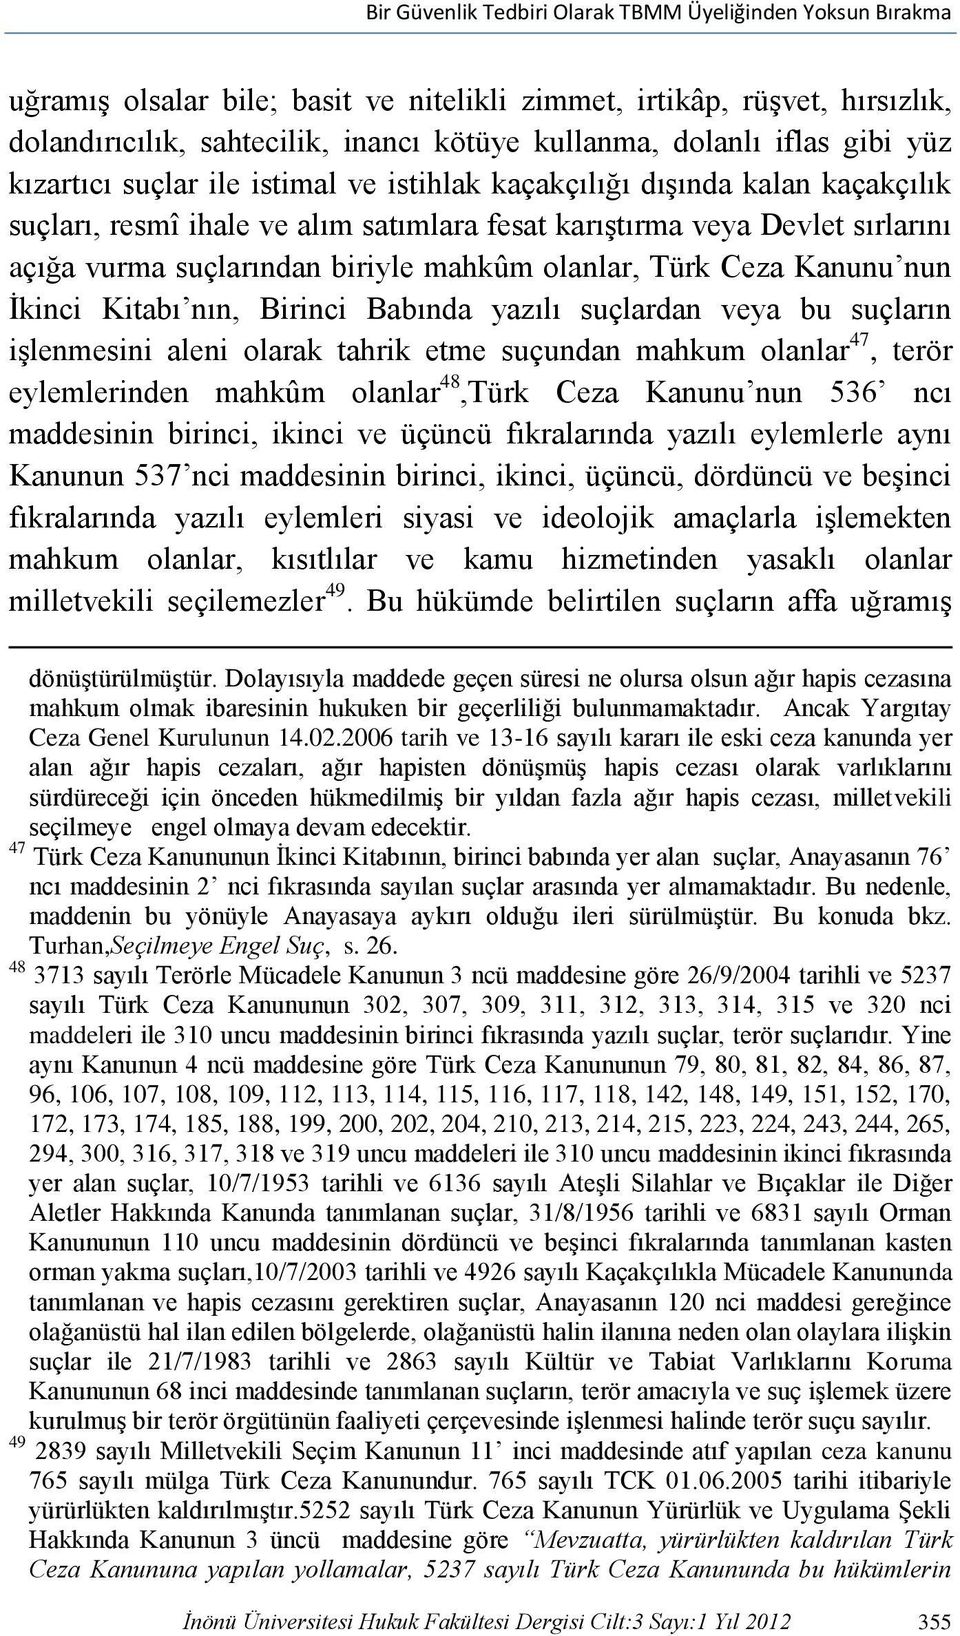 biriyle mahkûm olanlar, Türk Ceza Kanunu nun İkinci Kitabı nın, Birinci Babında yazılı suçlardan veya bu suçların işlenmesini aleni olarak tahrik etme suçundan mahkum olanlar 47, terör eylemlerinden